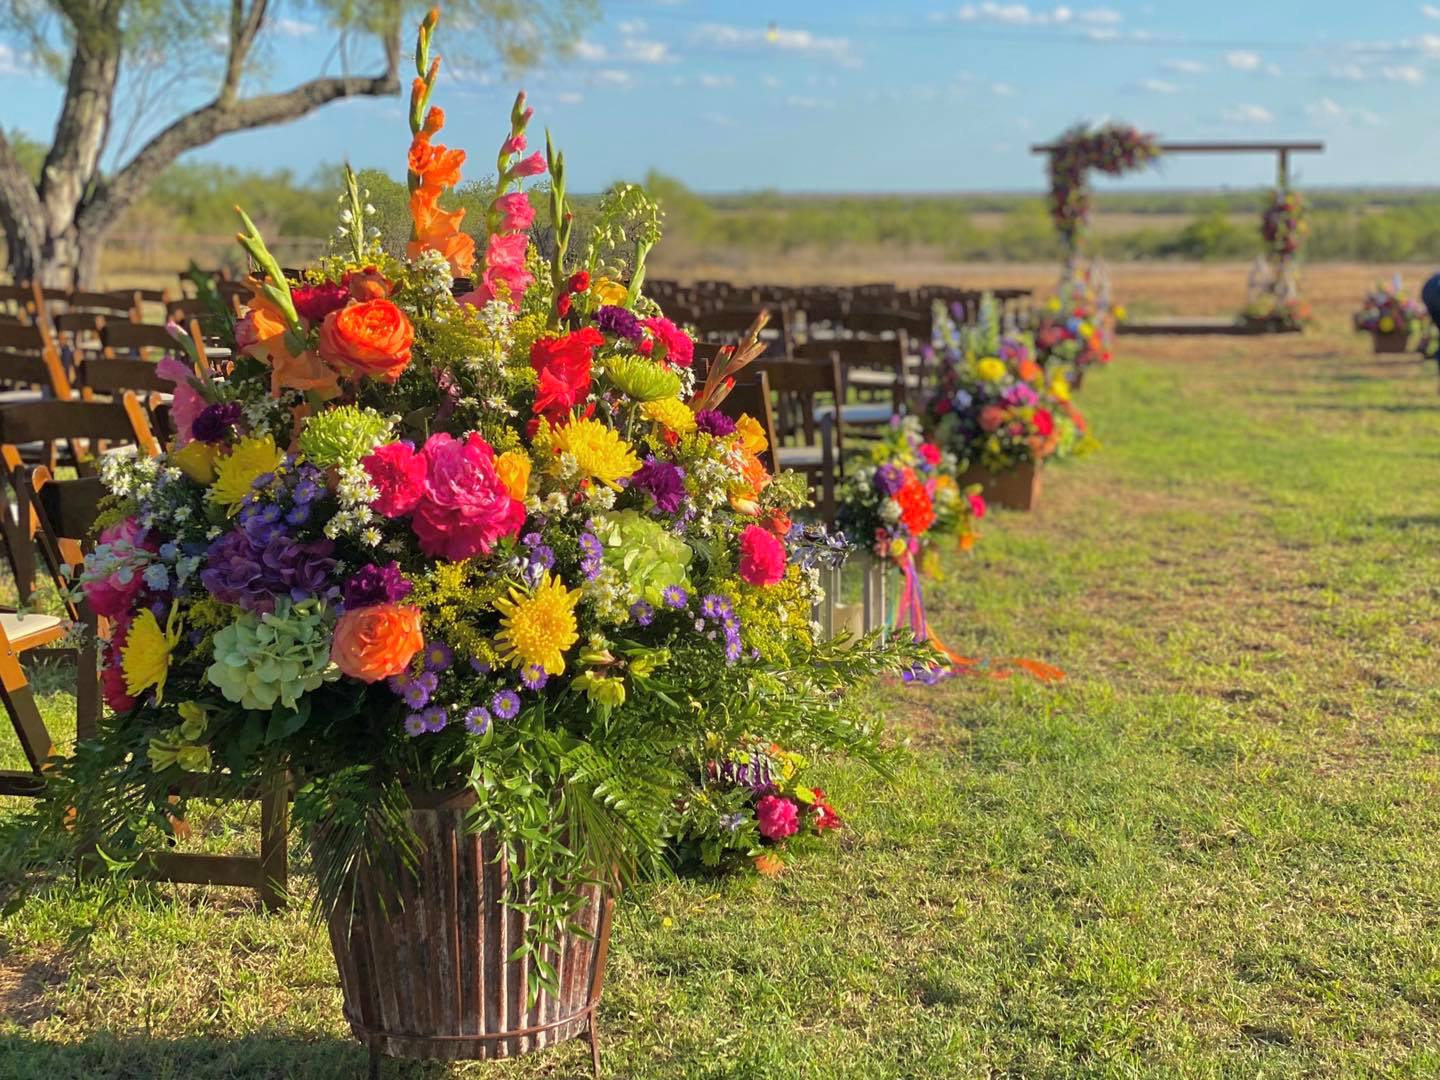 Lesley's Flowers San Antonio Weddings